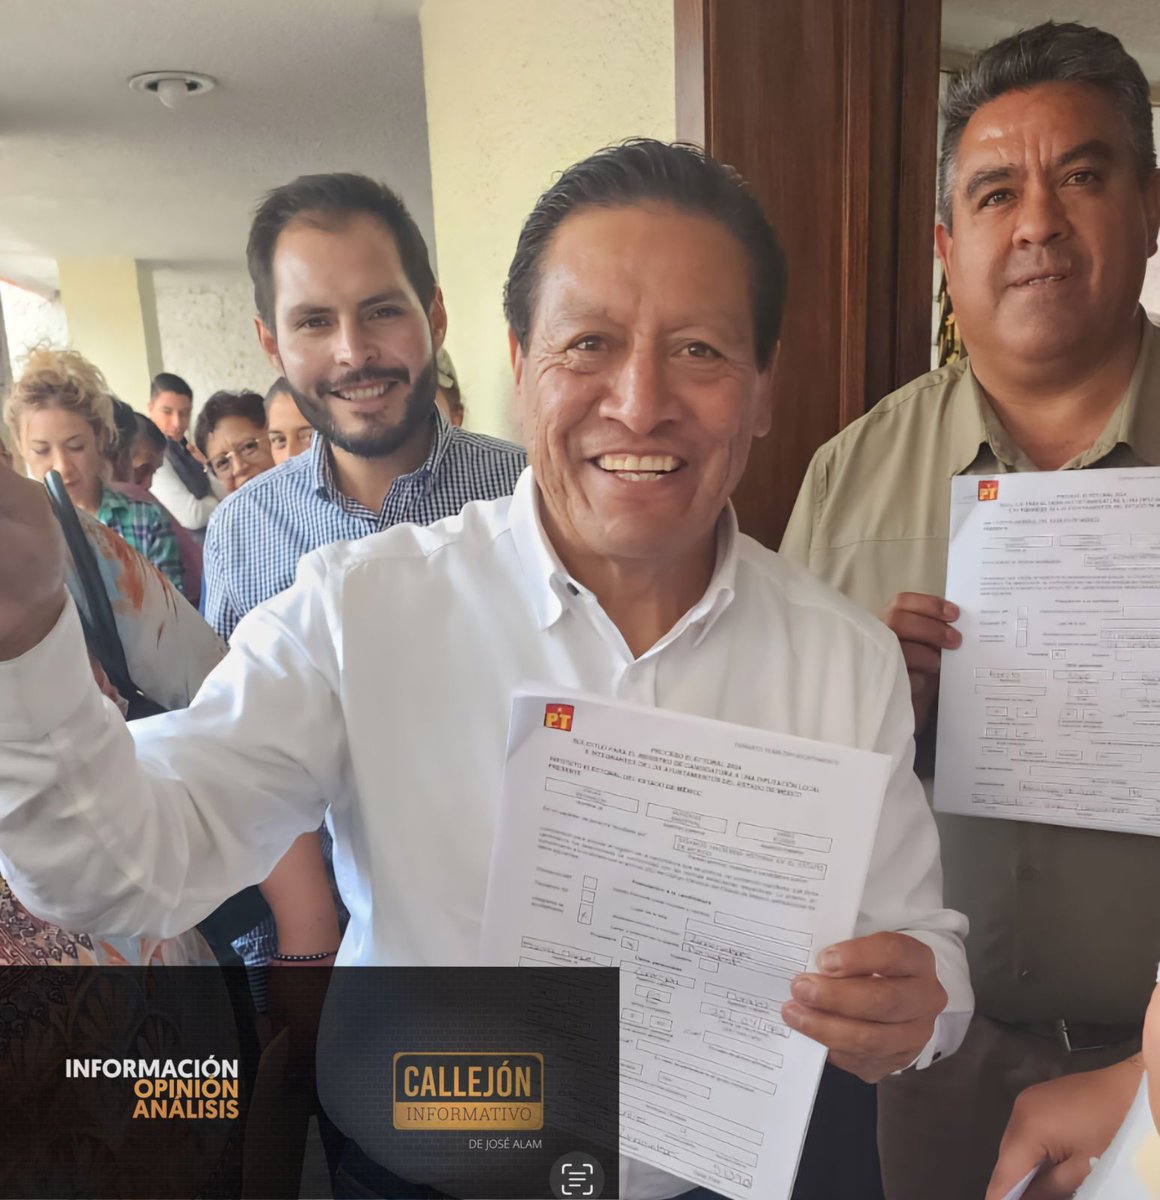 VA CASTREJÓN POR ZINACANTEPEC Esta tarde se registró Manuel Castrejón Morales como candidato del PT a la Presidencia Municipal de Zinacantepec. El PT va en coalición con Morena y el PVEM en esta demarcación.